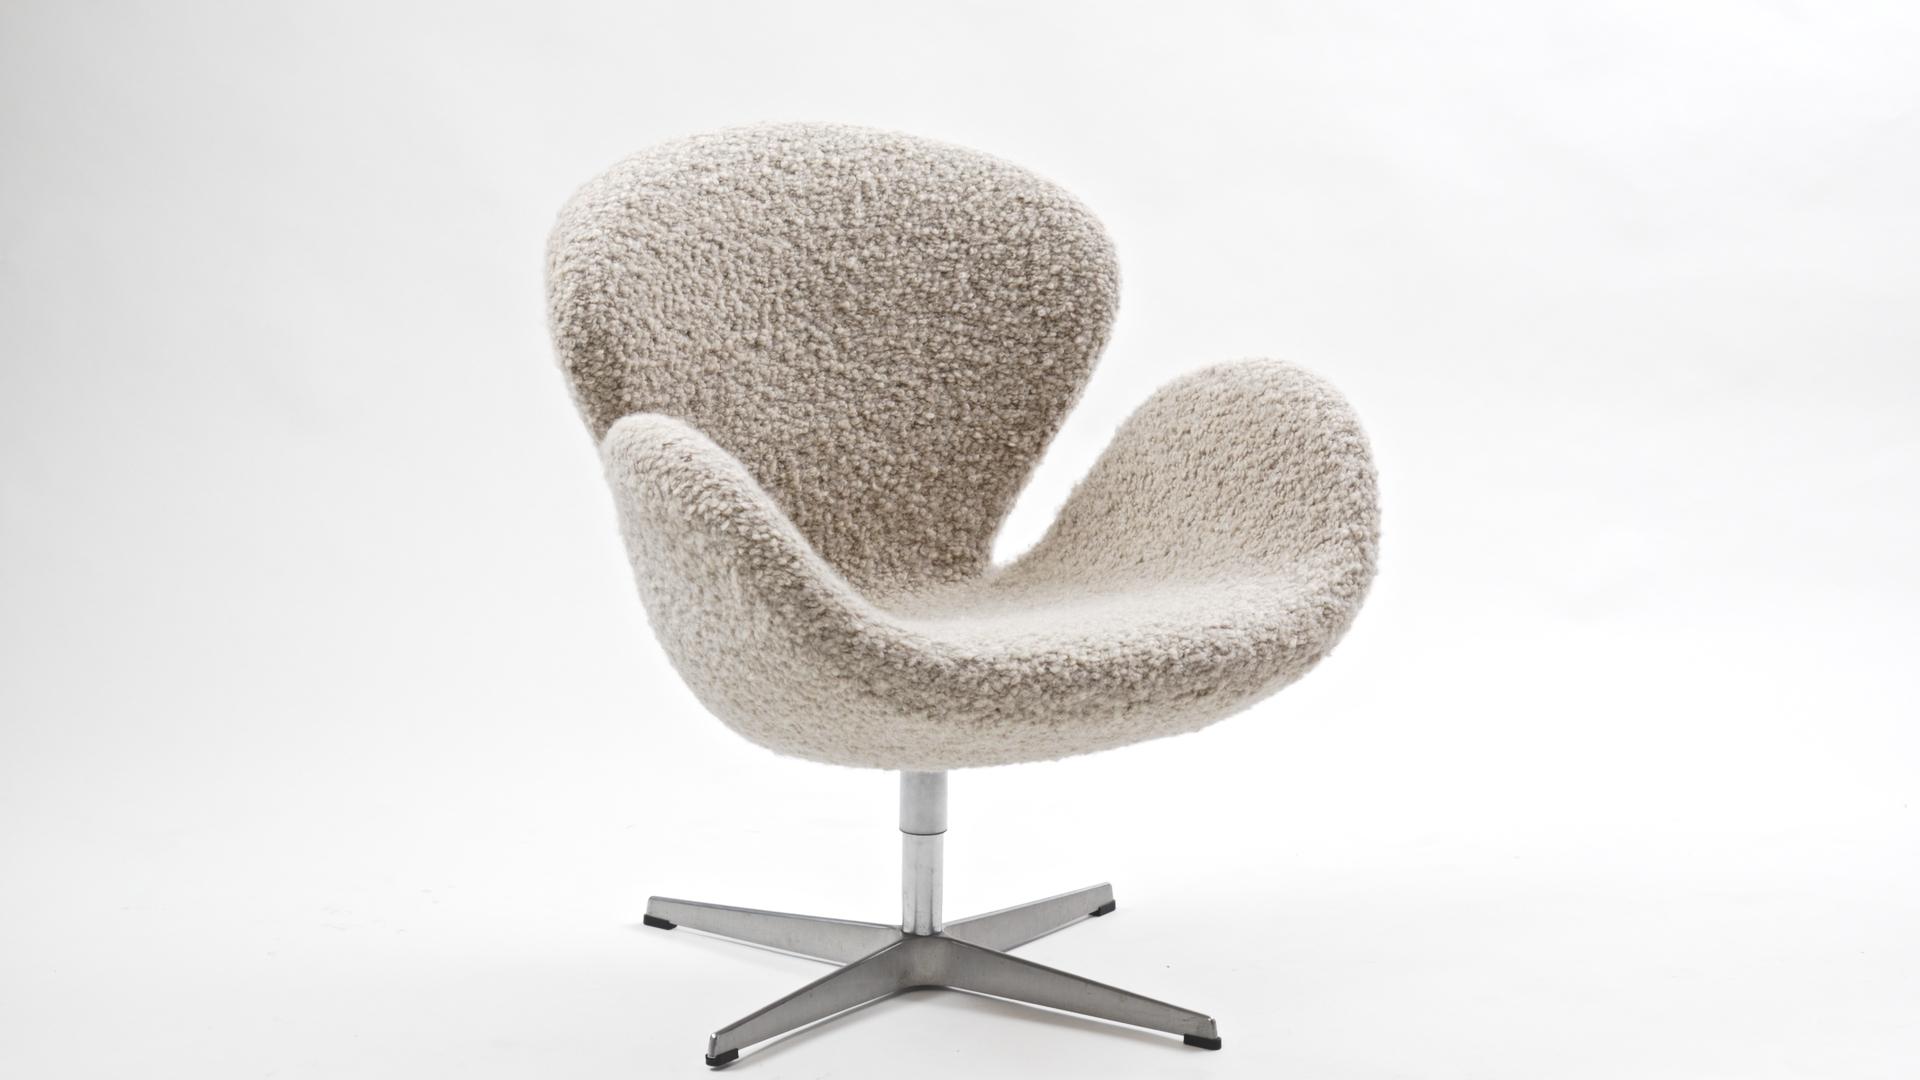 2005 Produktion des ikonischen Schwan-Stuhls von Arne Jacobsen für das SAS Hotel in Kopenhagen. Arne entwarf alle Möbel und das Gebäude selbst und gab nur Kunstwerke in Auftrag, die von jemand anderem angefertigt wurden. Sowohl der Eierstuhl als